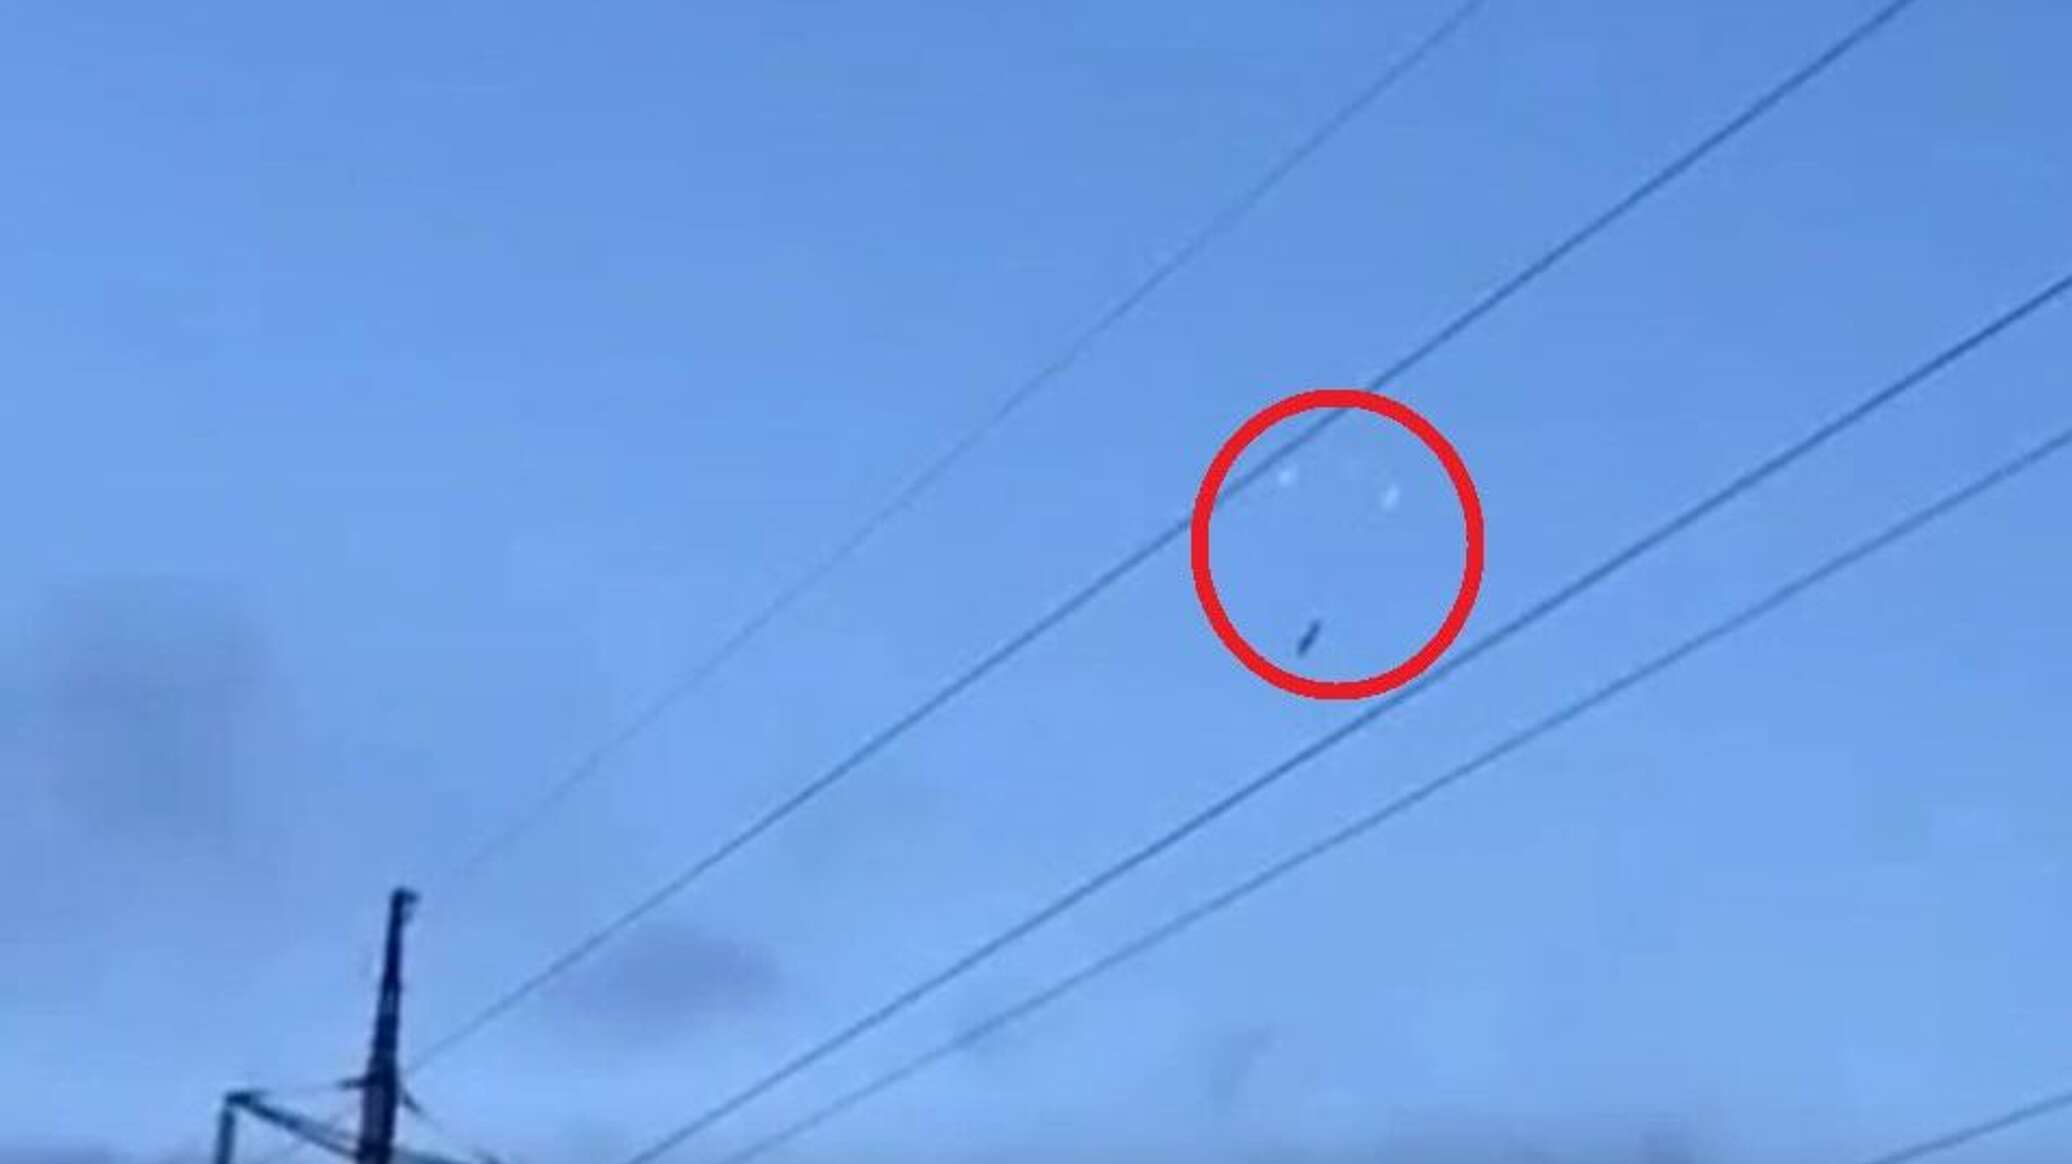 المشاهد الأولى للصاروخ الروسي الذي حير الغرب وأوكرانيا بسبب إطلاقه "فخاخا للدفاعات الجوية"... فيديو